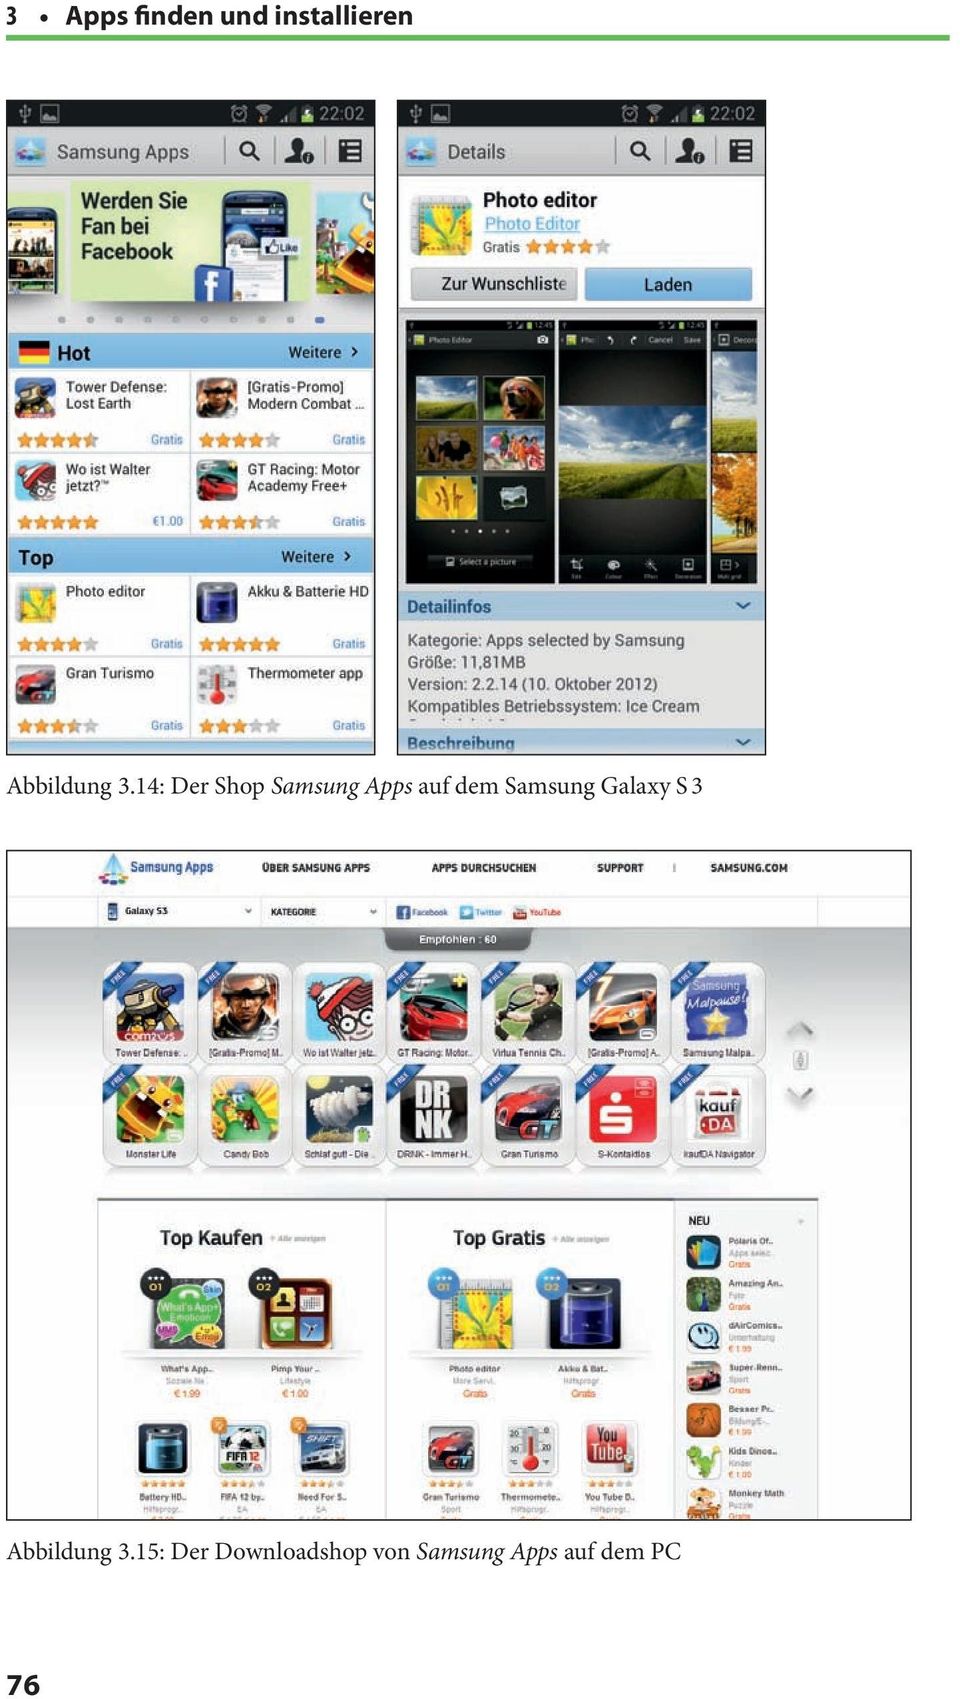 14: Der Shop Samsung Apps auf dem